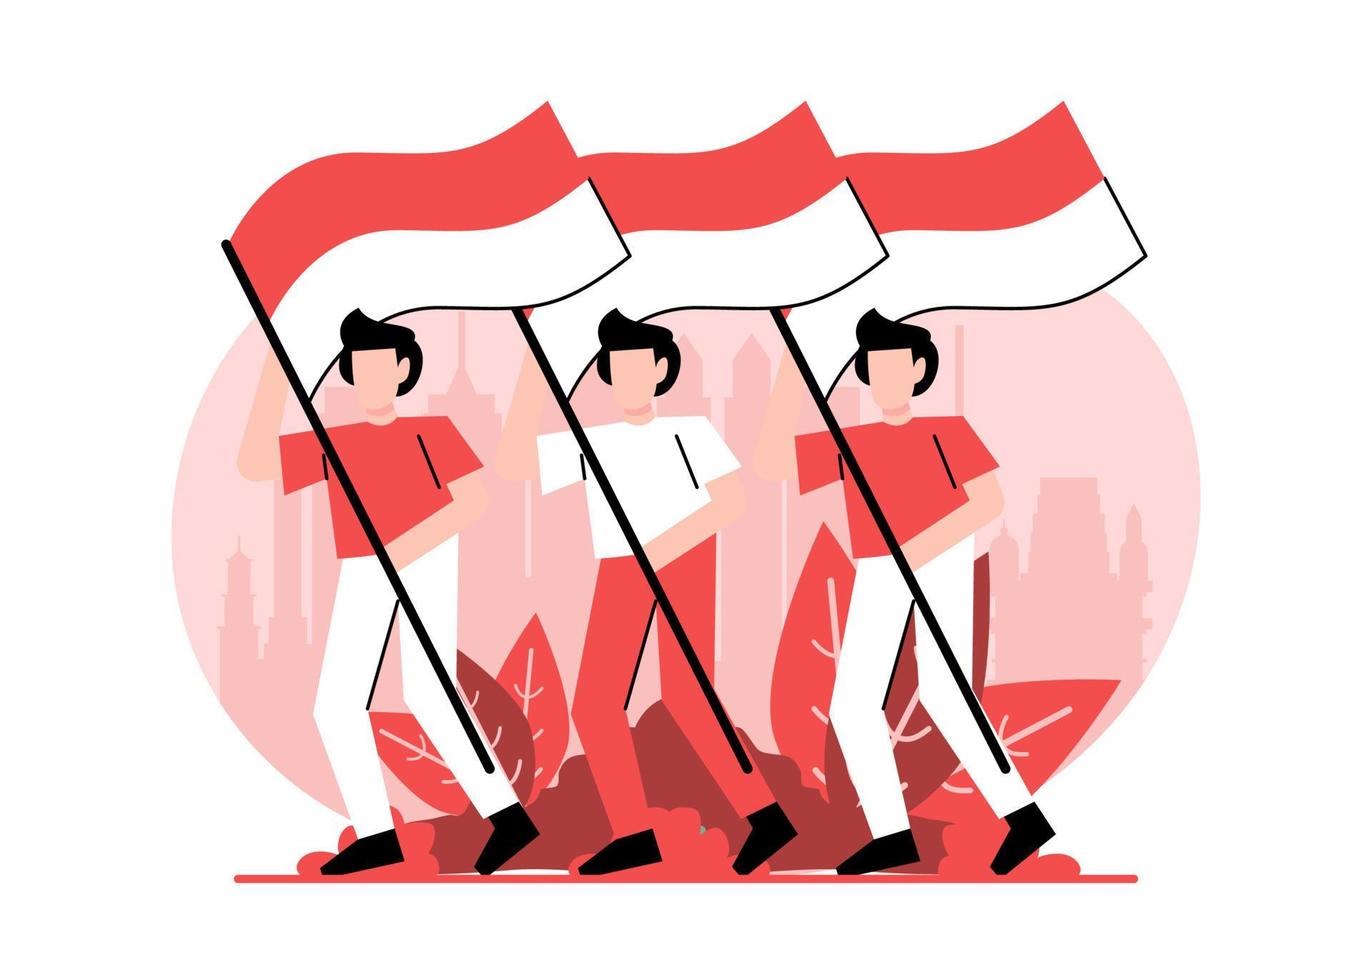 día de la independencia de indonesia el 17 de agosto vector de ilustración plana aislado. la ceremonia de la juventud rinde homenaje a la bandera de indonesia. izamiento de la bandera de indonesia.